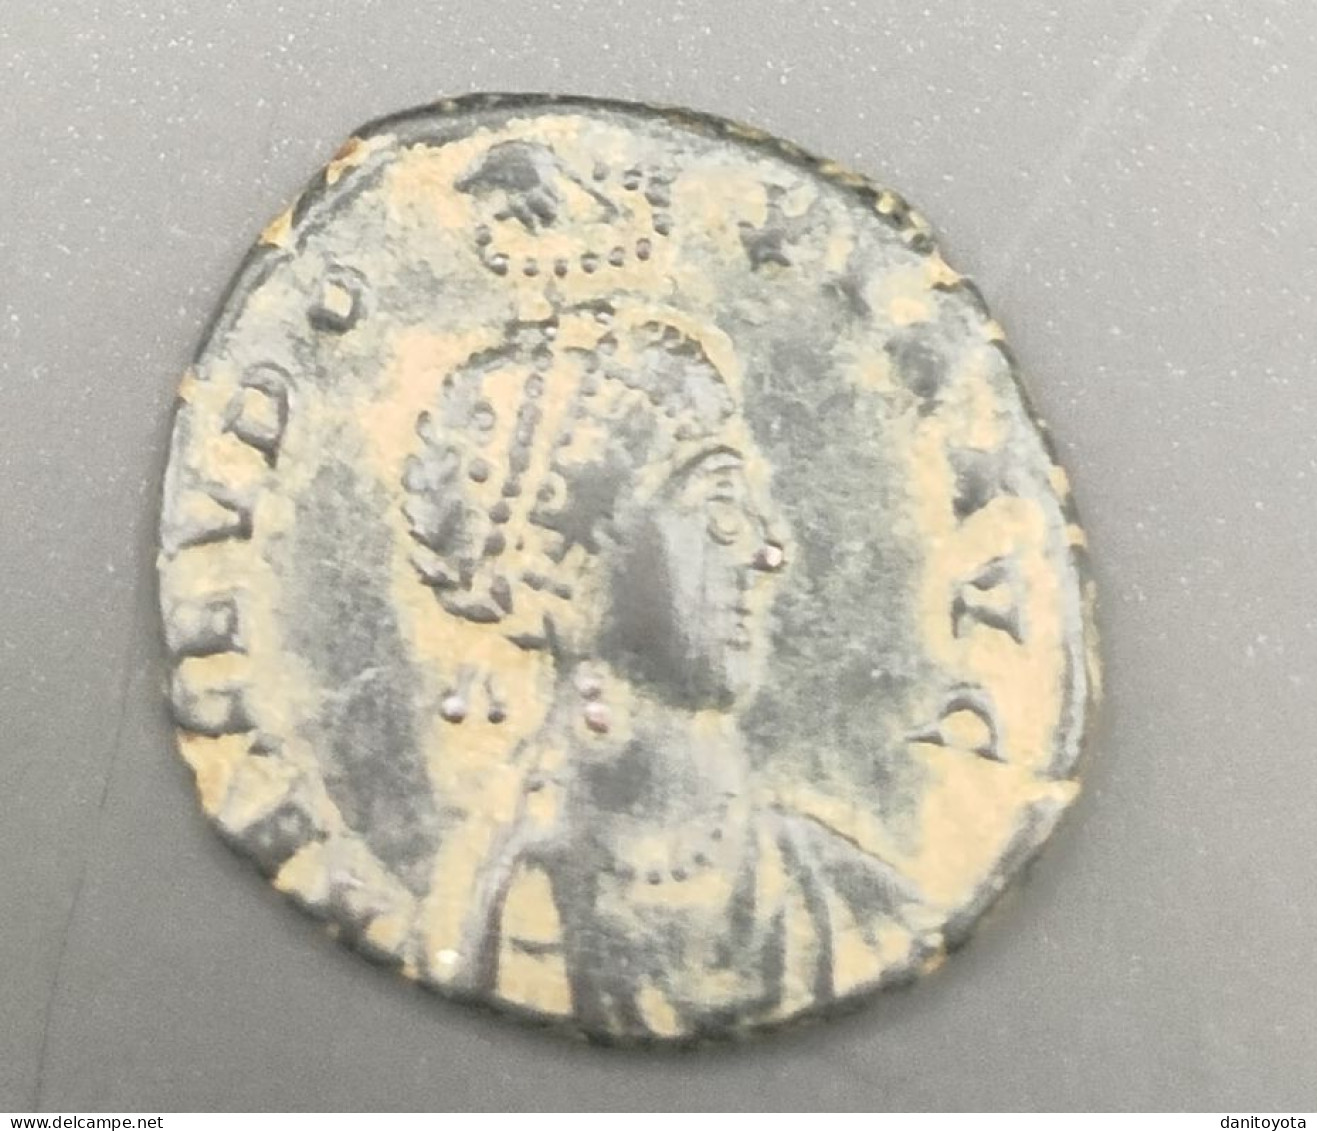 IMPERIO ROMANO. AÑO 401/403 D.C. AELIA EUDOXIA. NUMMUS. PESO 2,44 GR.  REF A/F - El Bajo Imperio Romano (363 / 476)